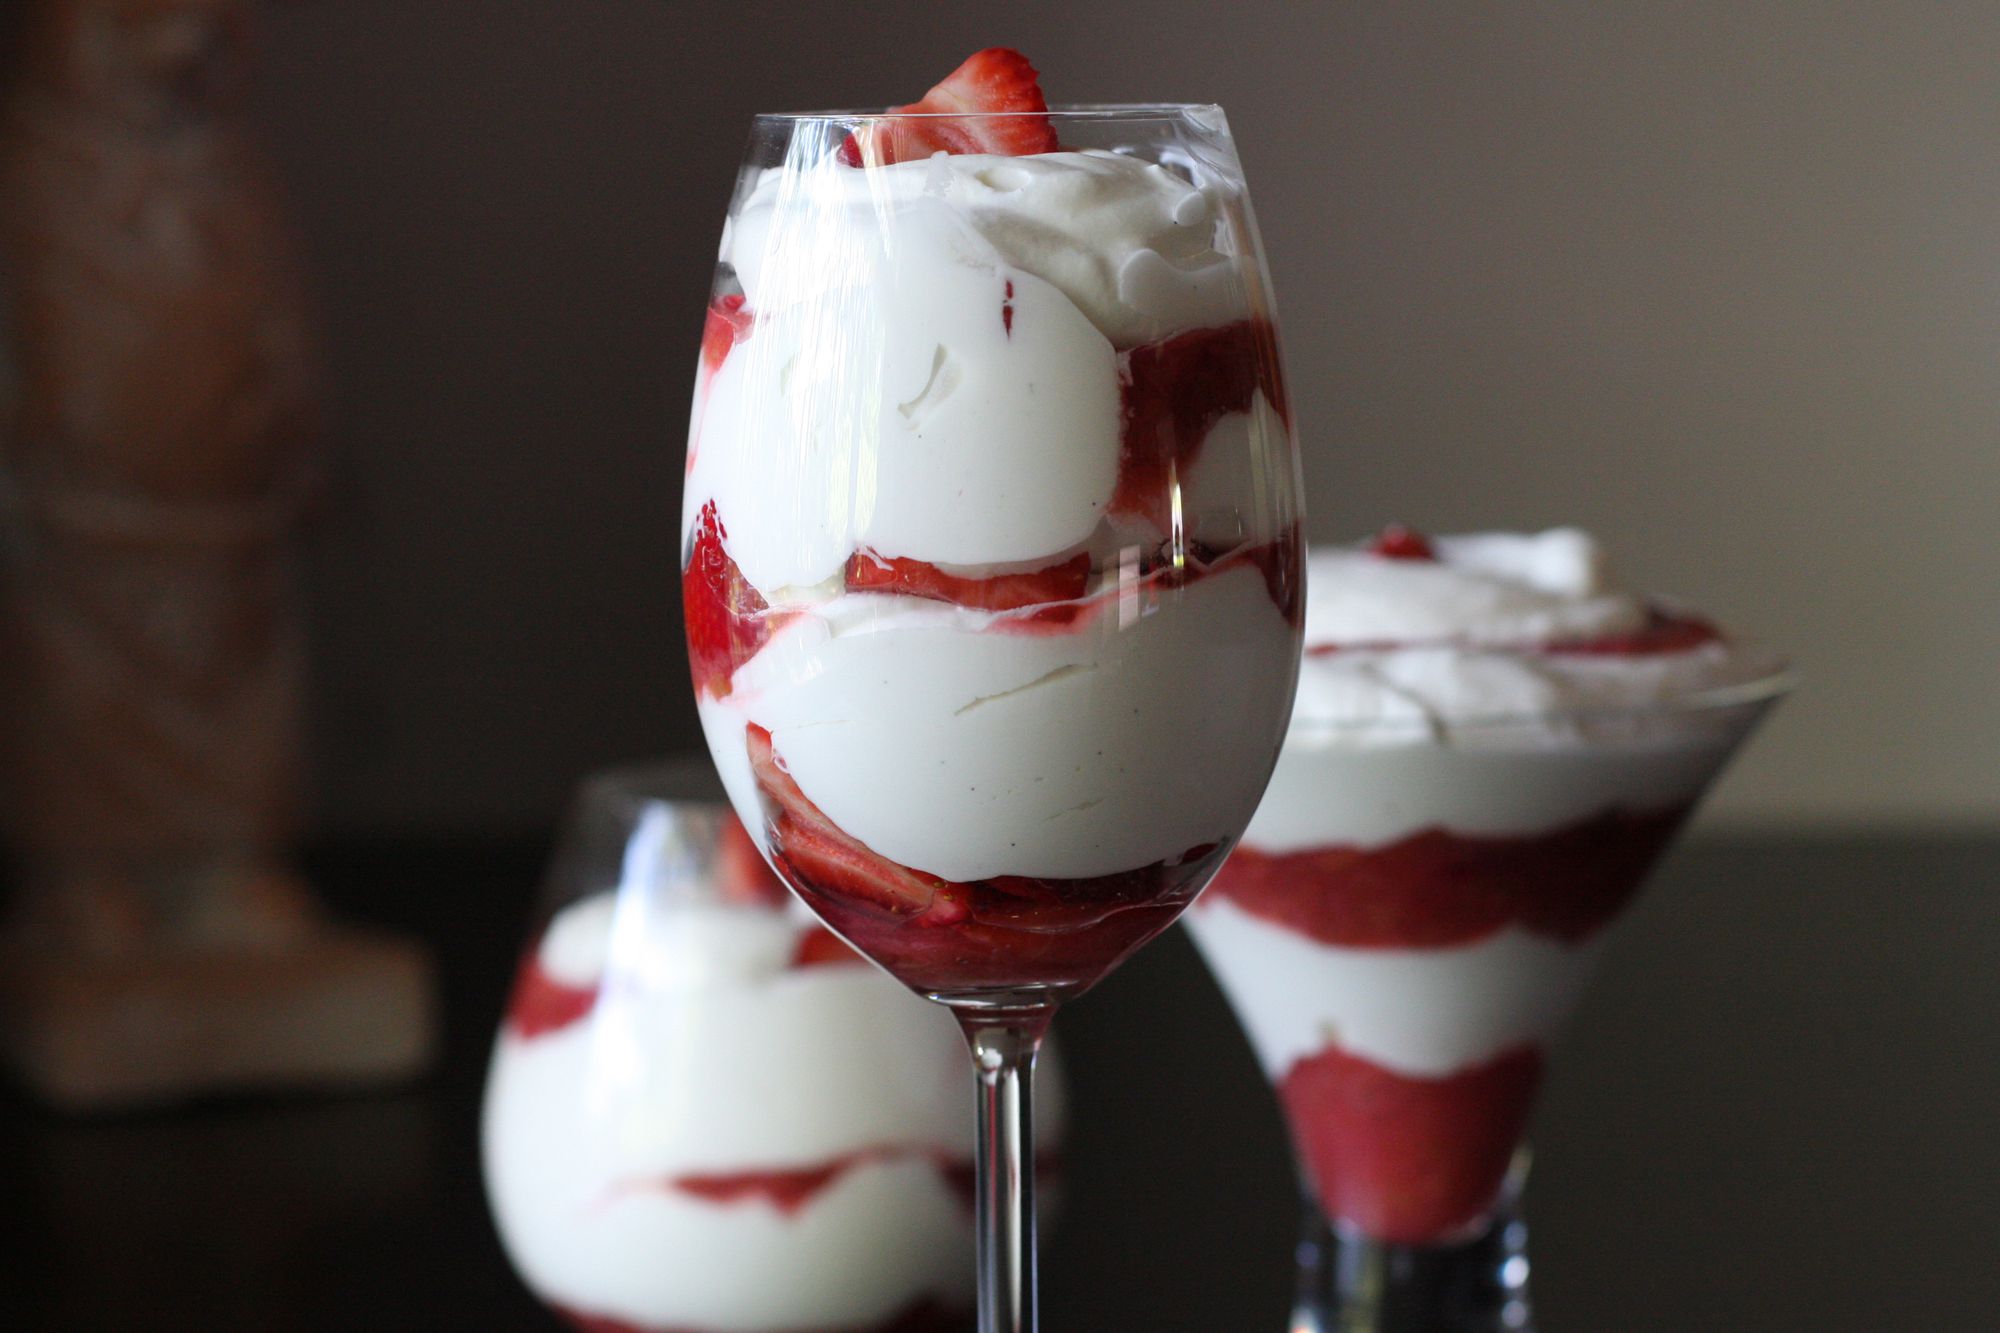 Easy Strawberry Rhubarb Fool Dessert Recipe